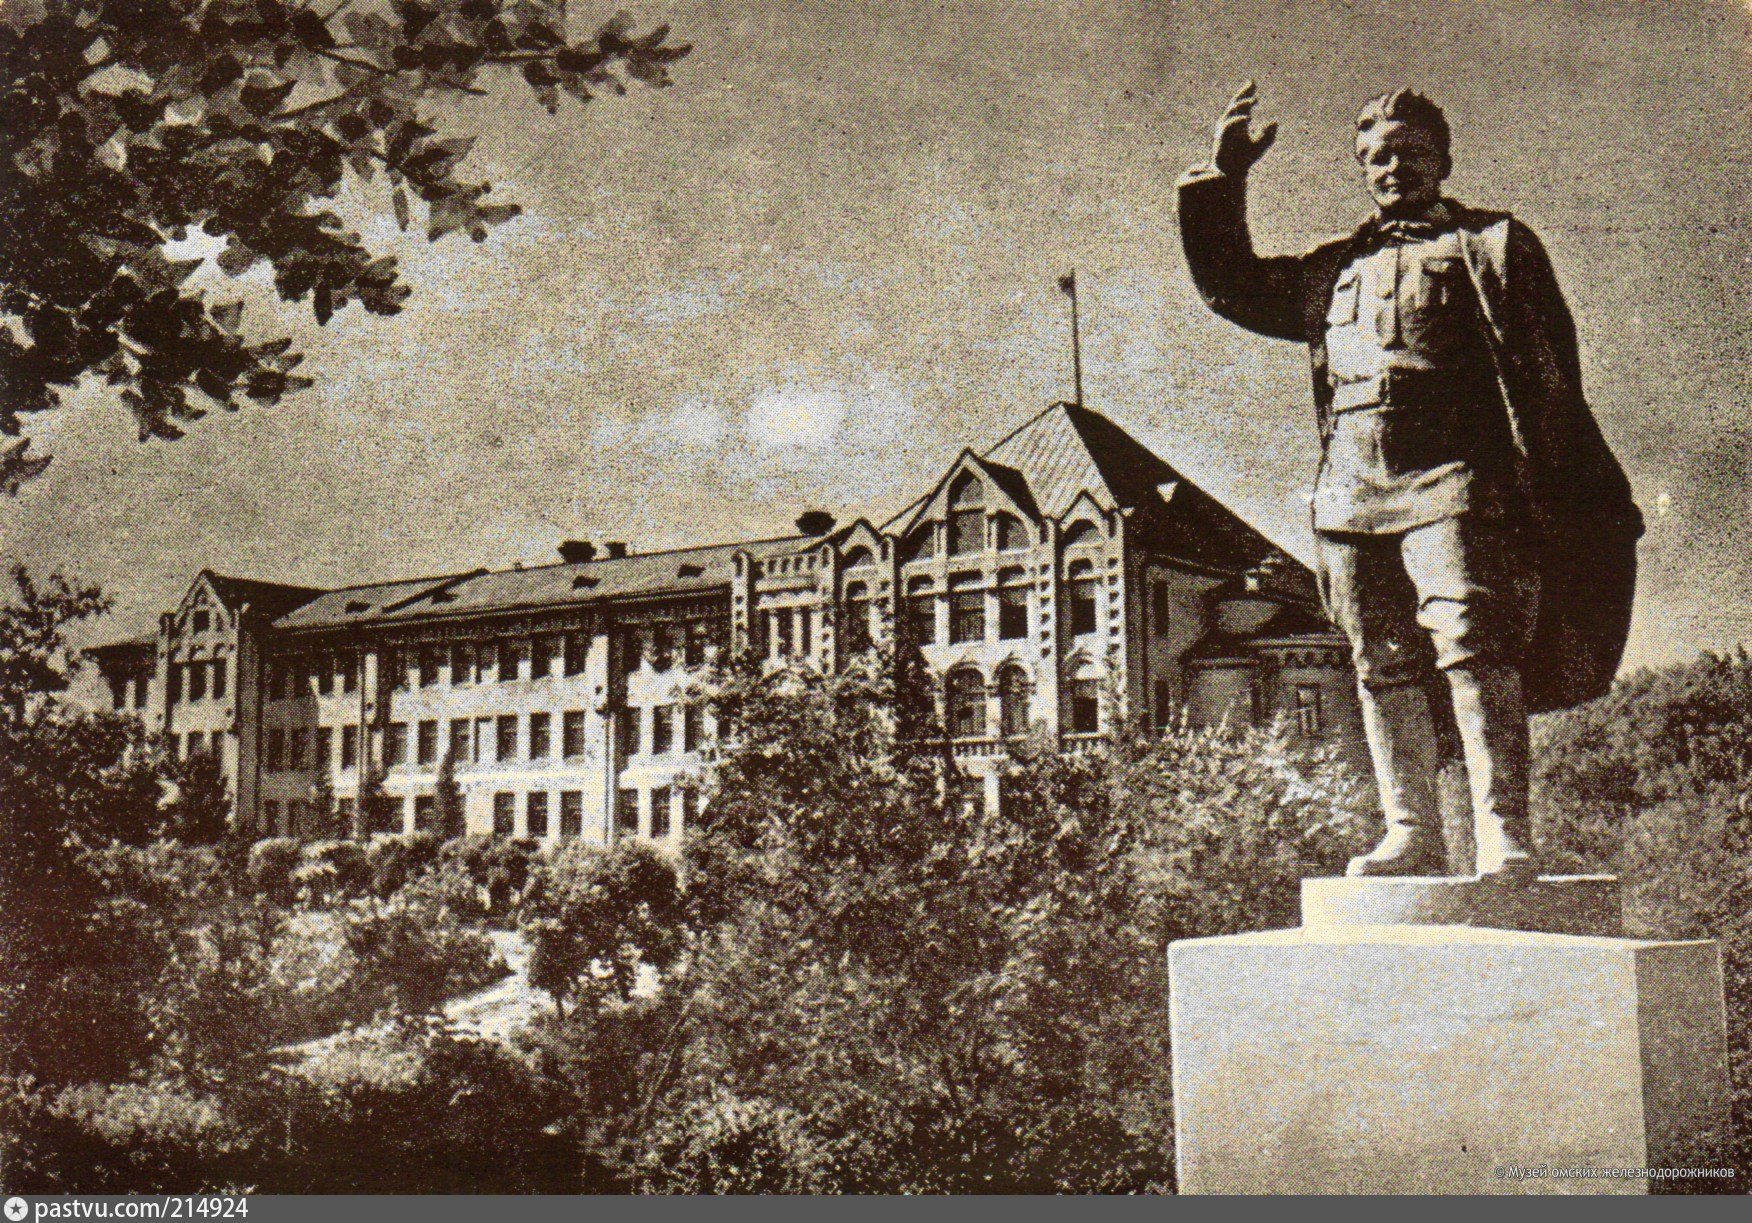 фотографии омского сельскохозяйственного института 1975 года